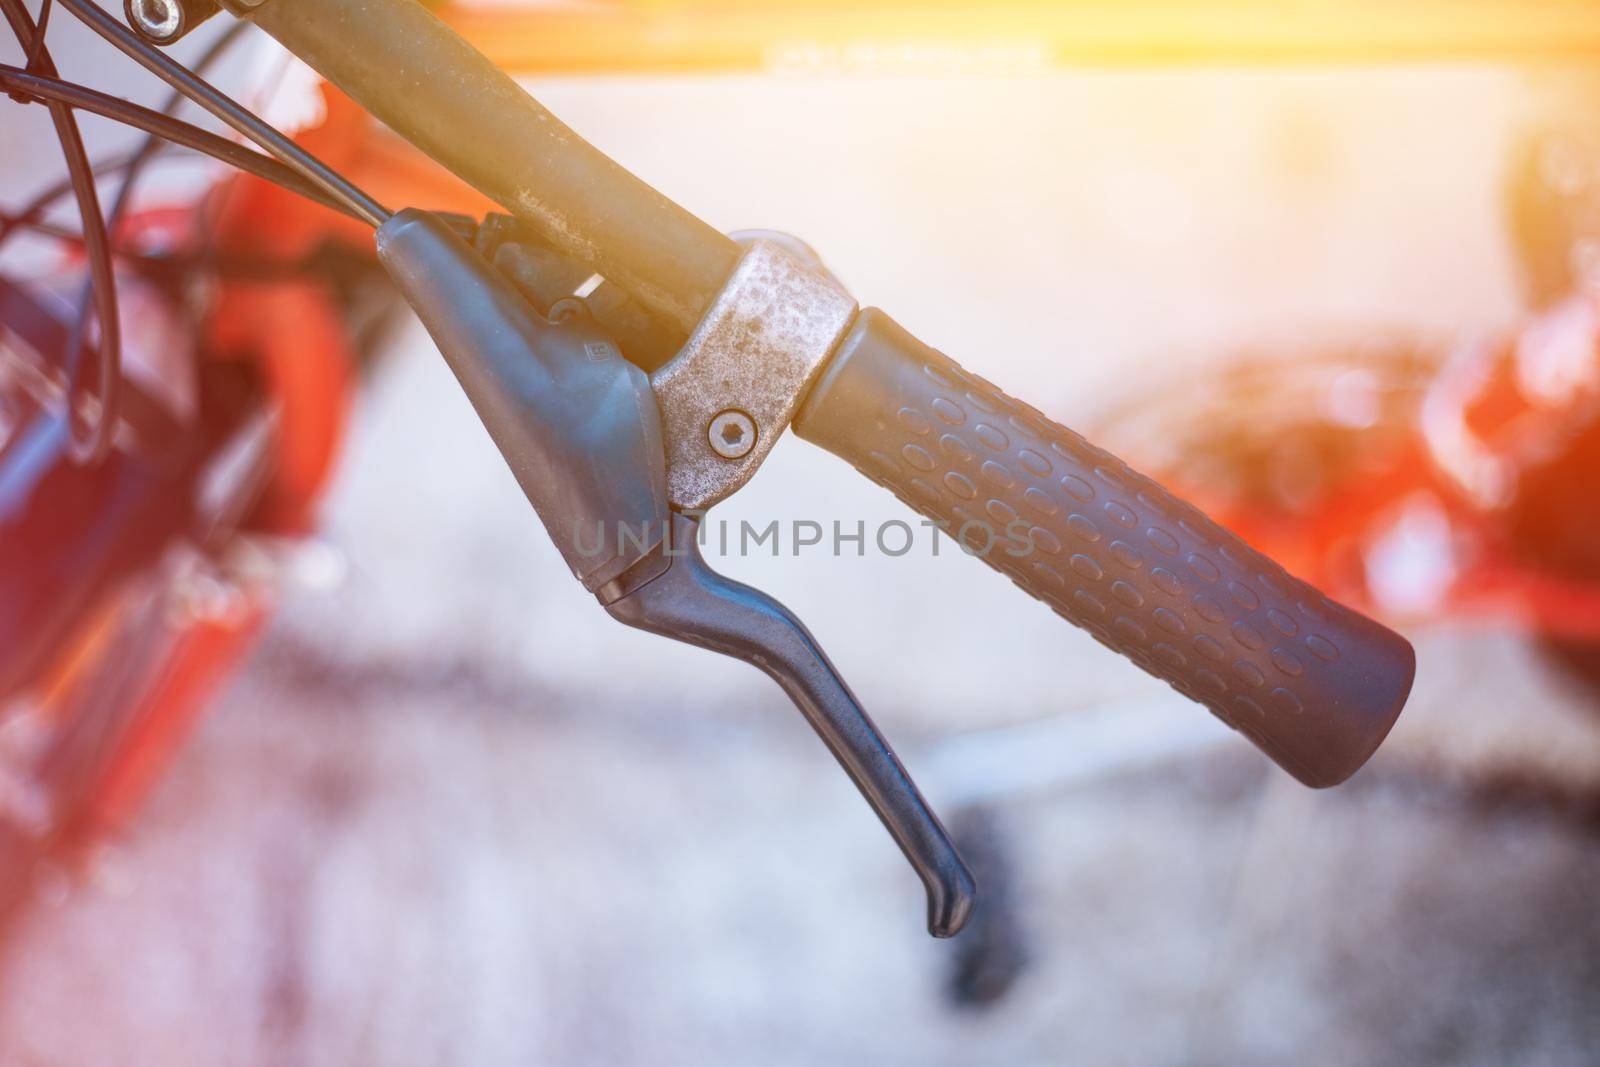 Bicycle handlebar and breaks, bike repair, blurred background by Daxenbichler